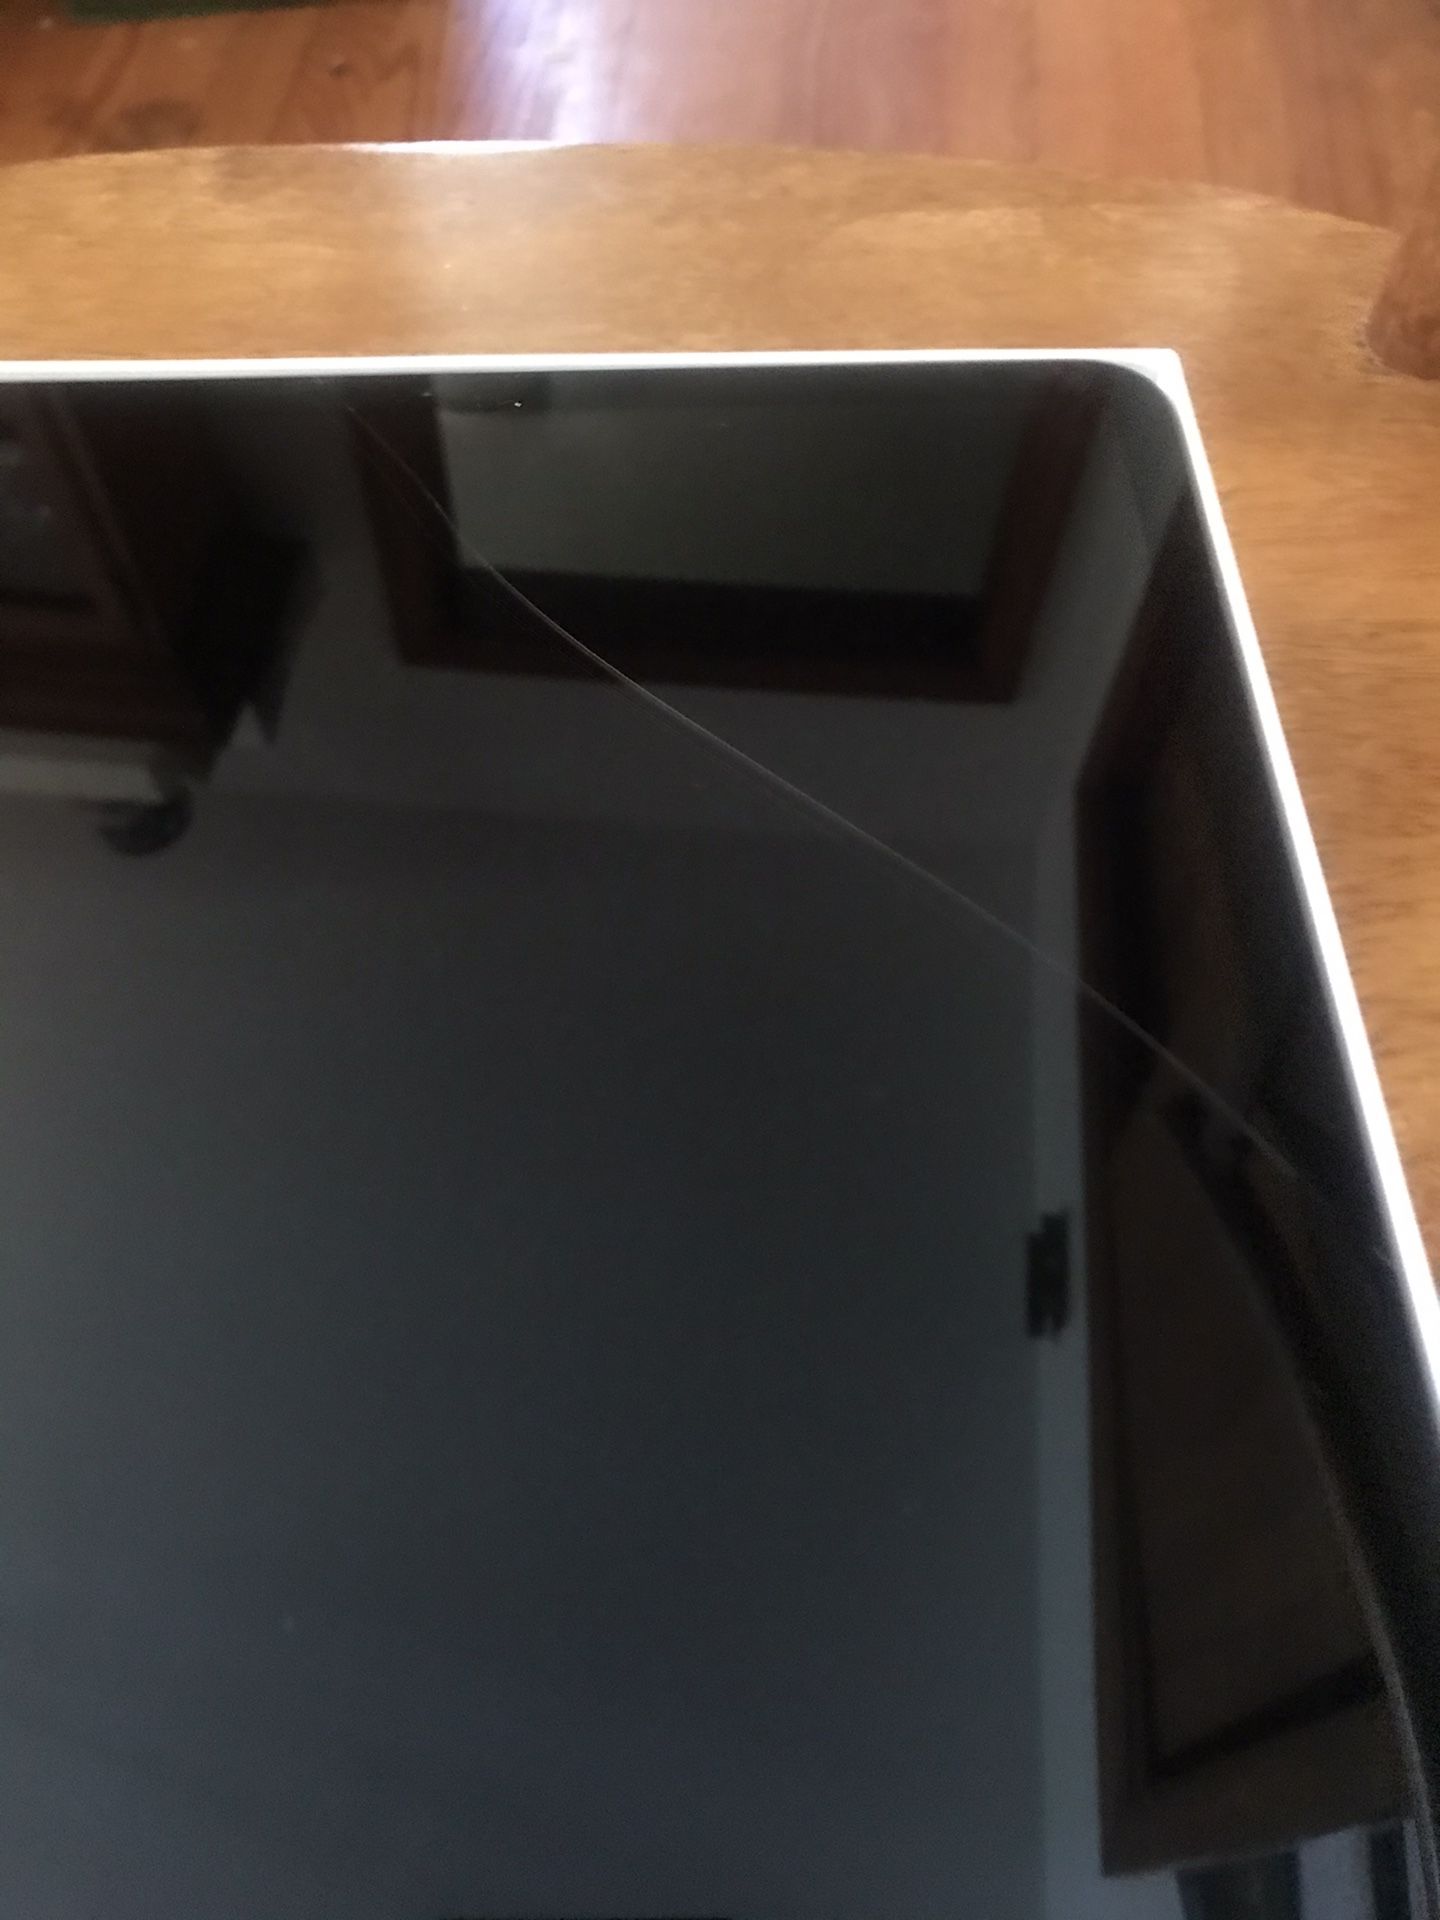 New iPad Pro 3rd Generation 12.9” 256 GB